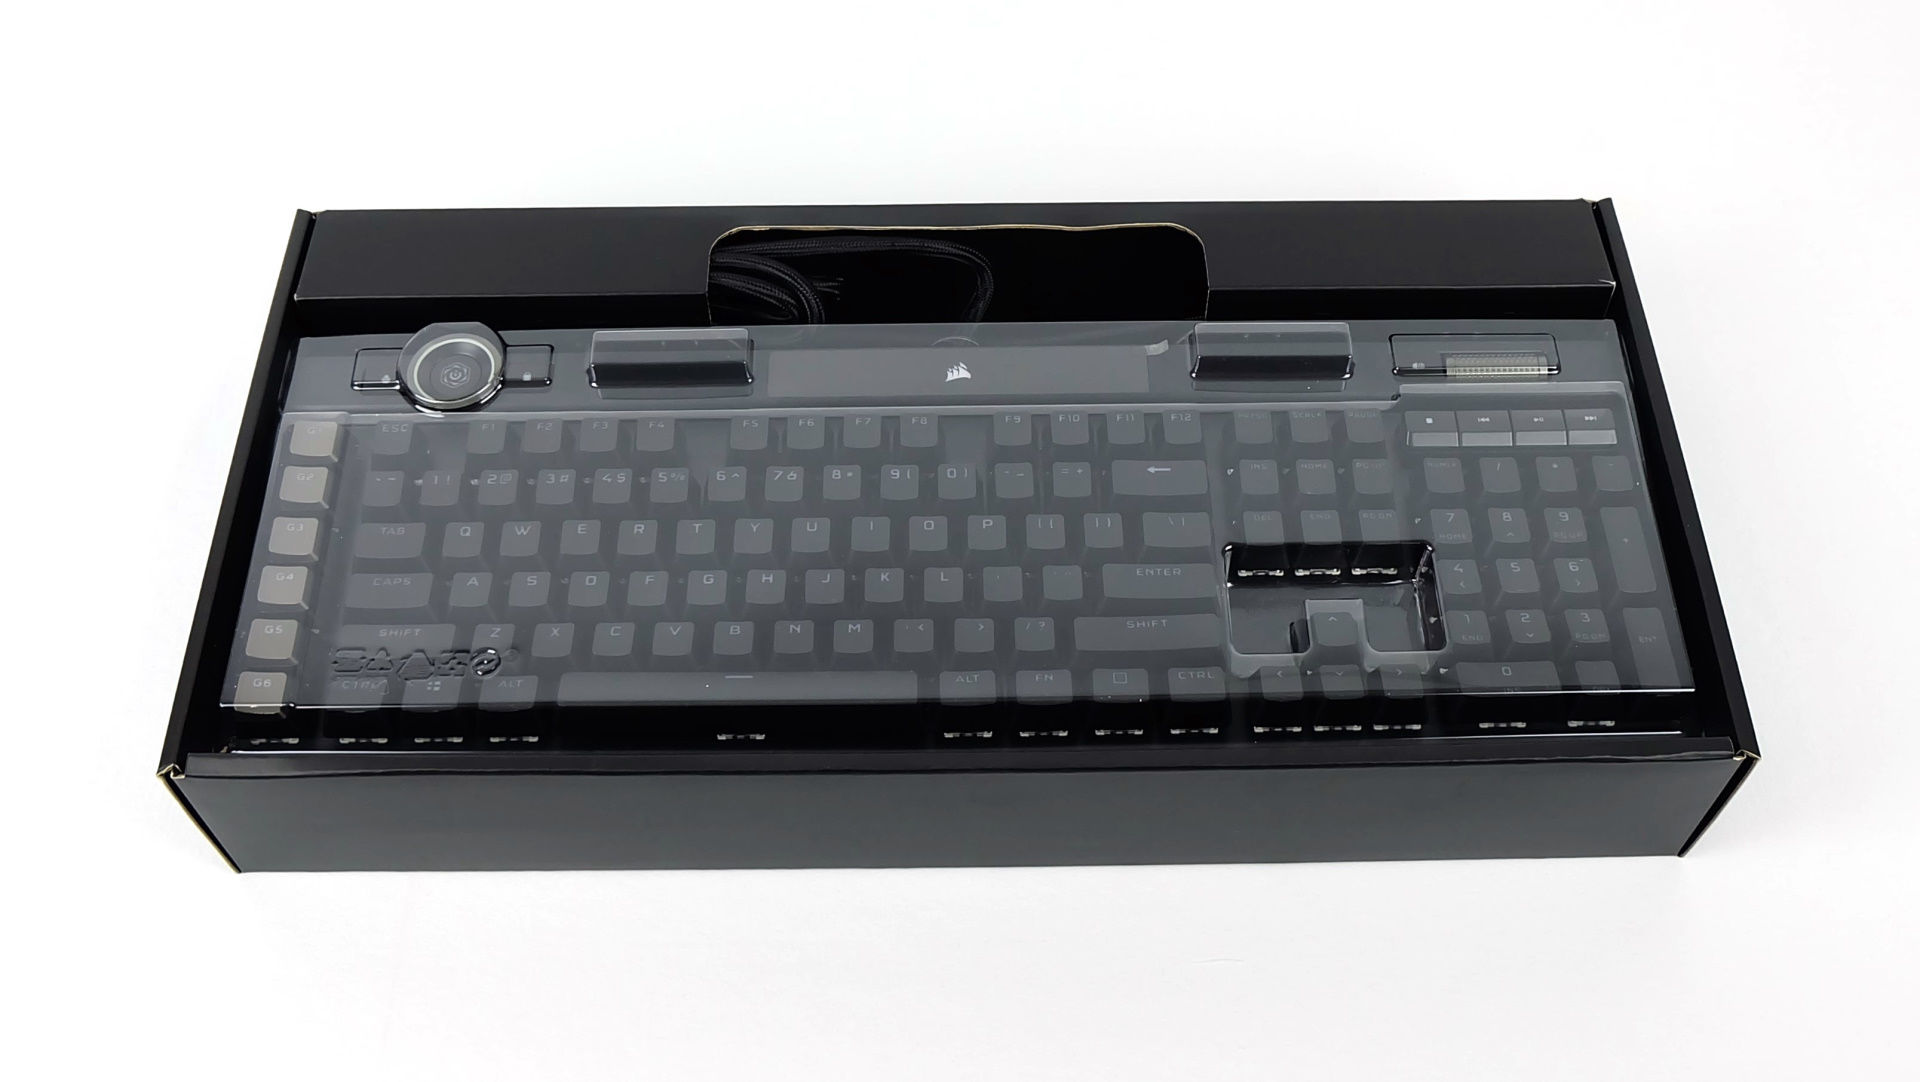 Corsair K100 Rgb Mechanical Gaming Keyboard Review Corsair K100 Rgb Optical Mechanical Gaming Keyboard